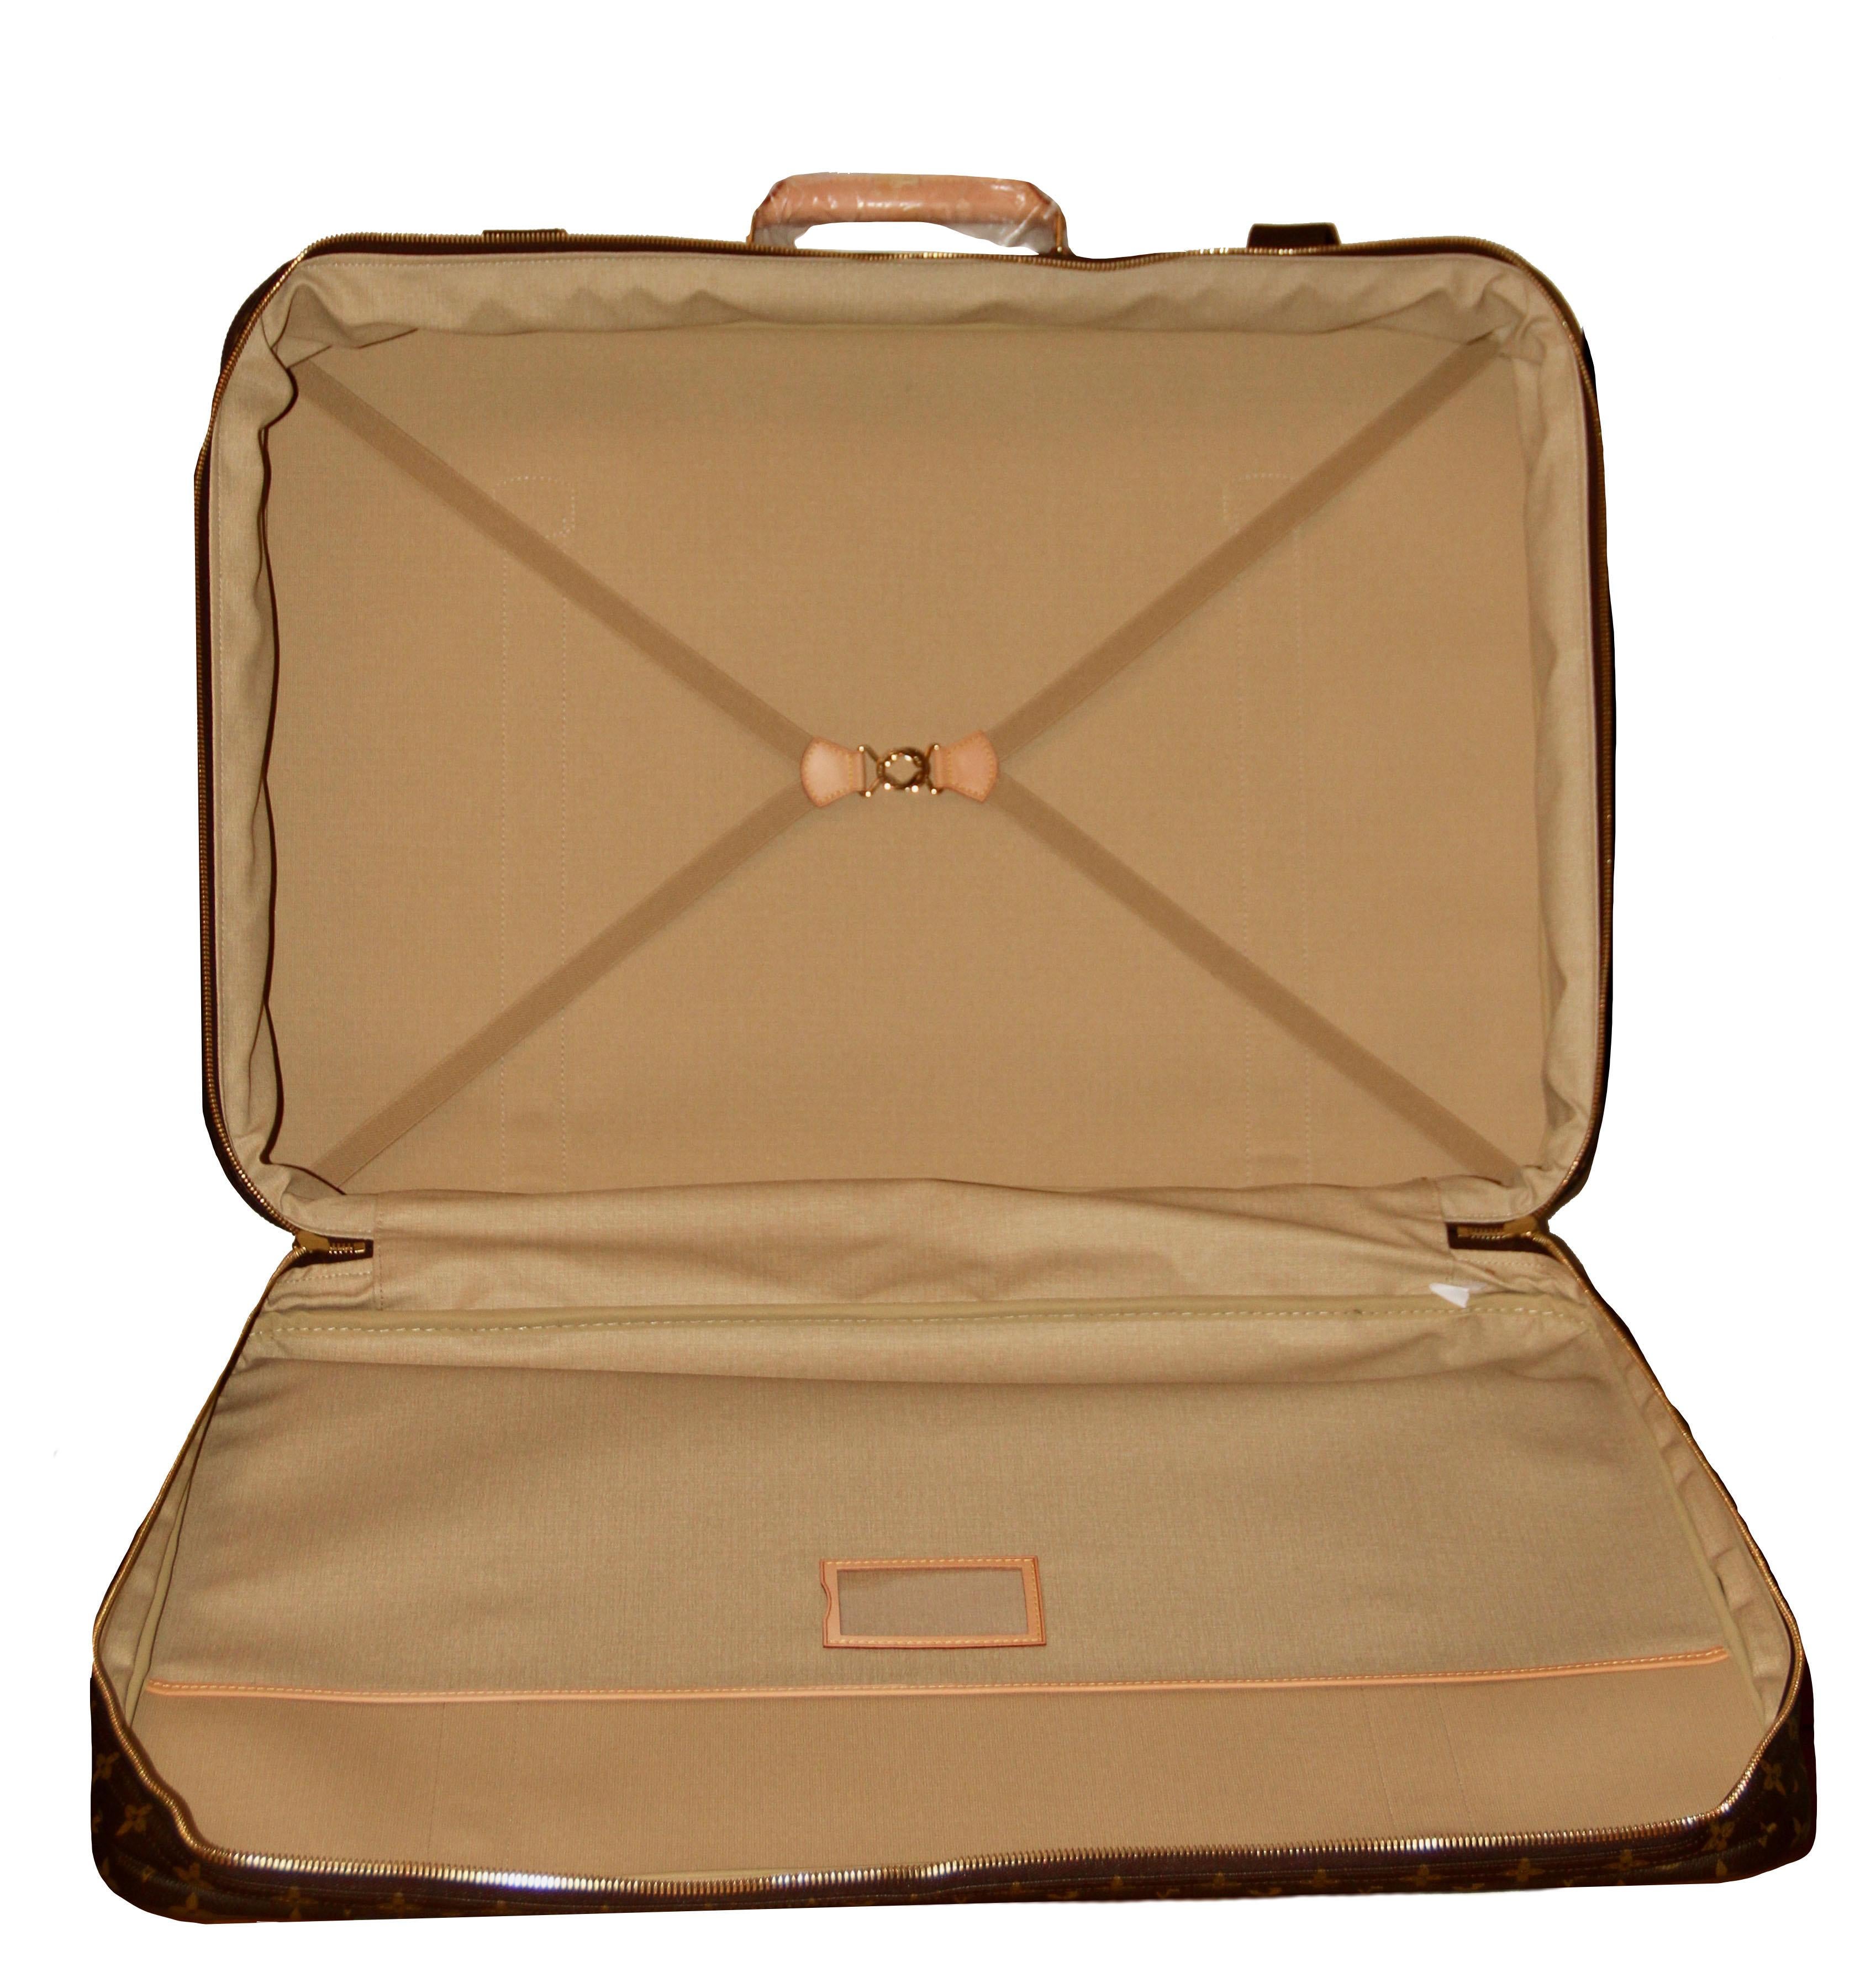 Louis Vuitton Satellite 65 Monogram Suitcase 4